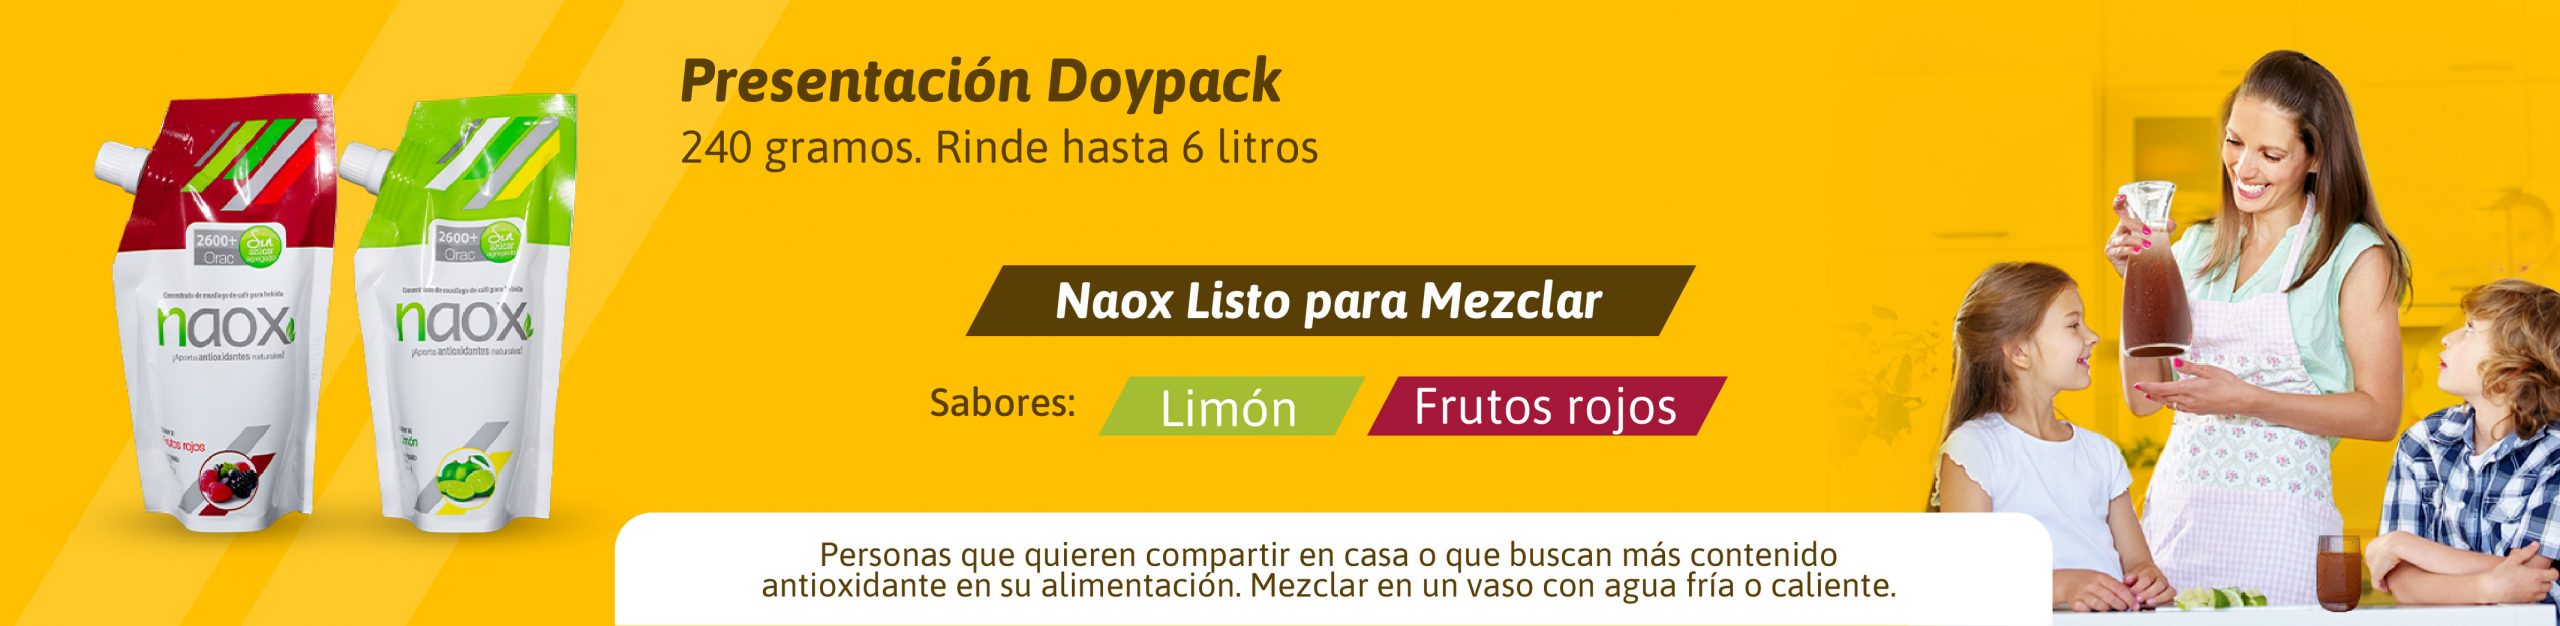 Naox Doypack, bebida antioxidante saludable